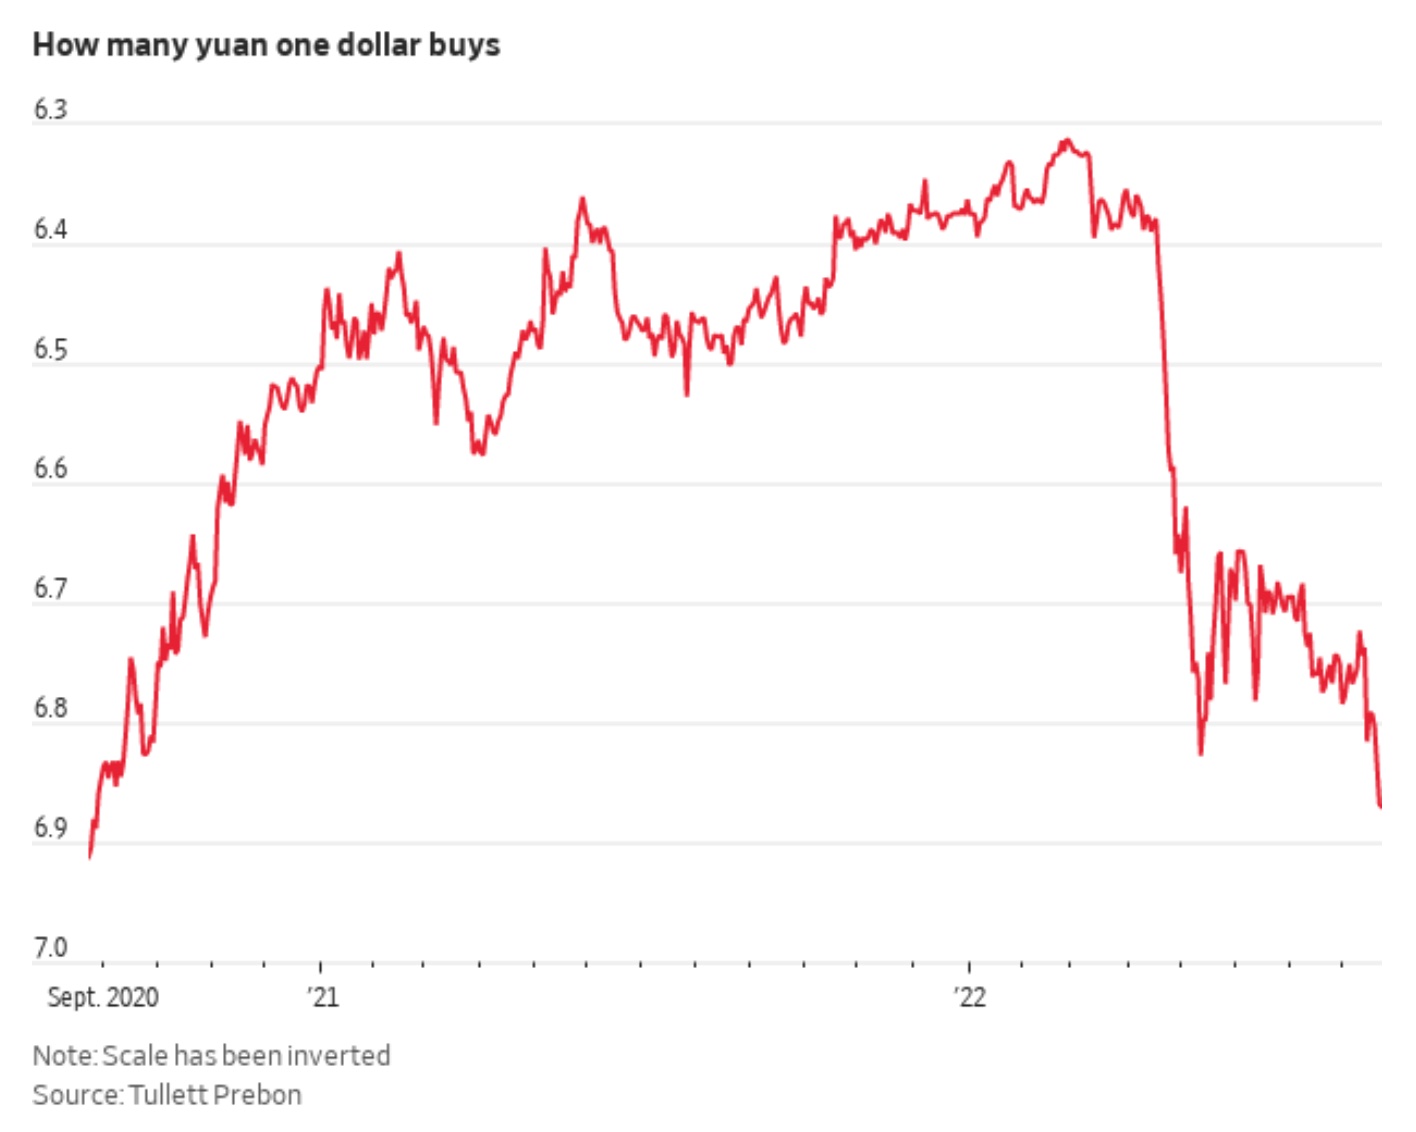 Yuan declines